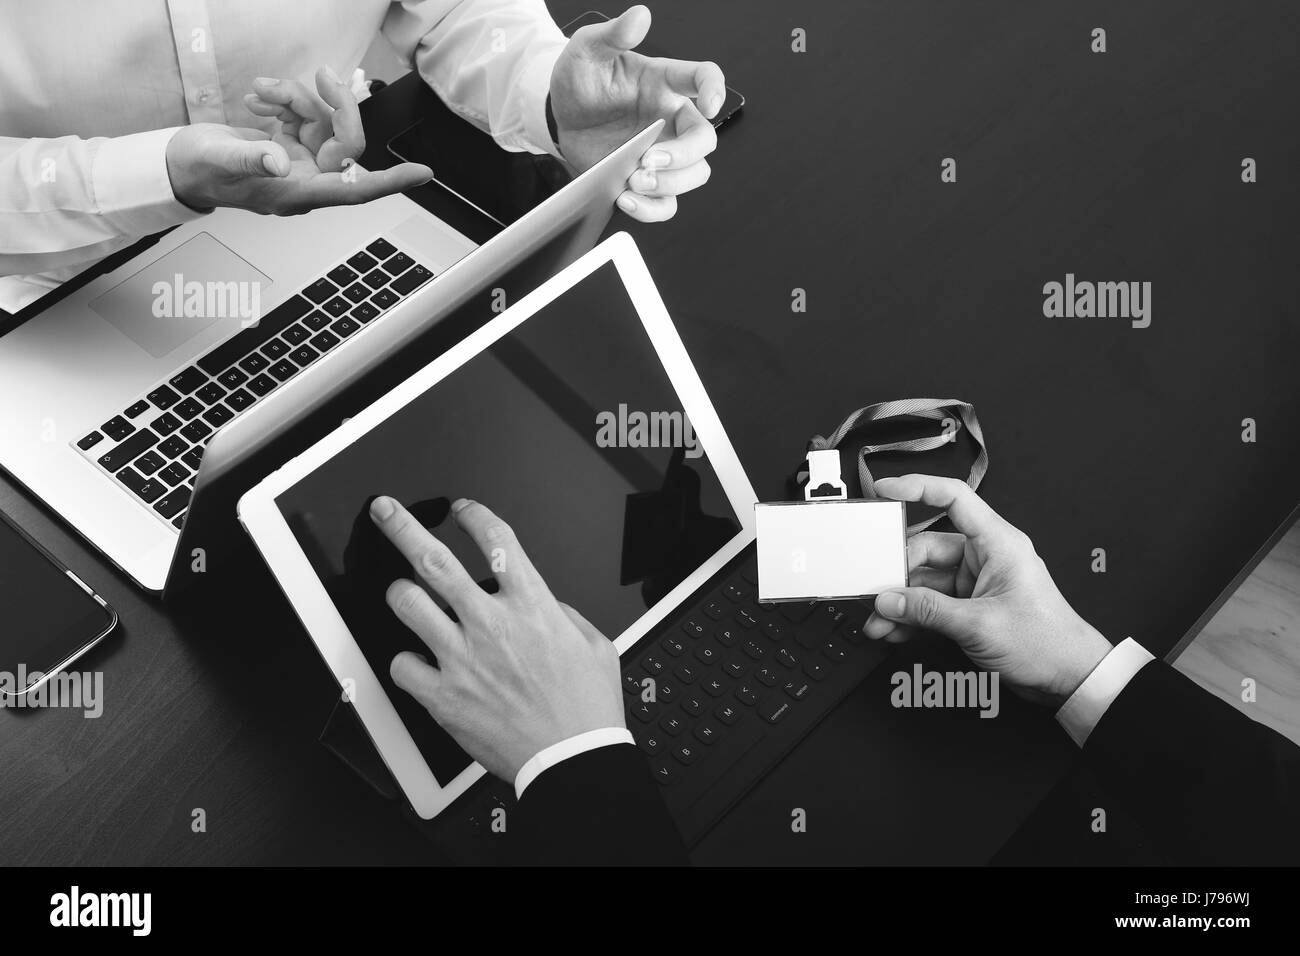 La réunion de l'équipe de travail concept,businessman using smart phone et tablette numérique et un ordinateur portable et d'étiquette de nom de bureau moderne en noir et blanc, Banque D'Images